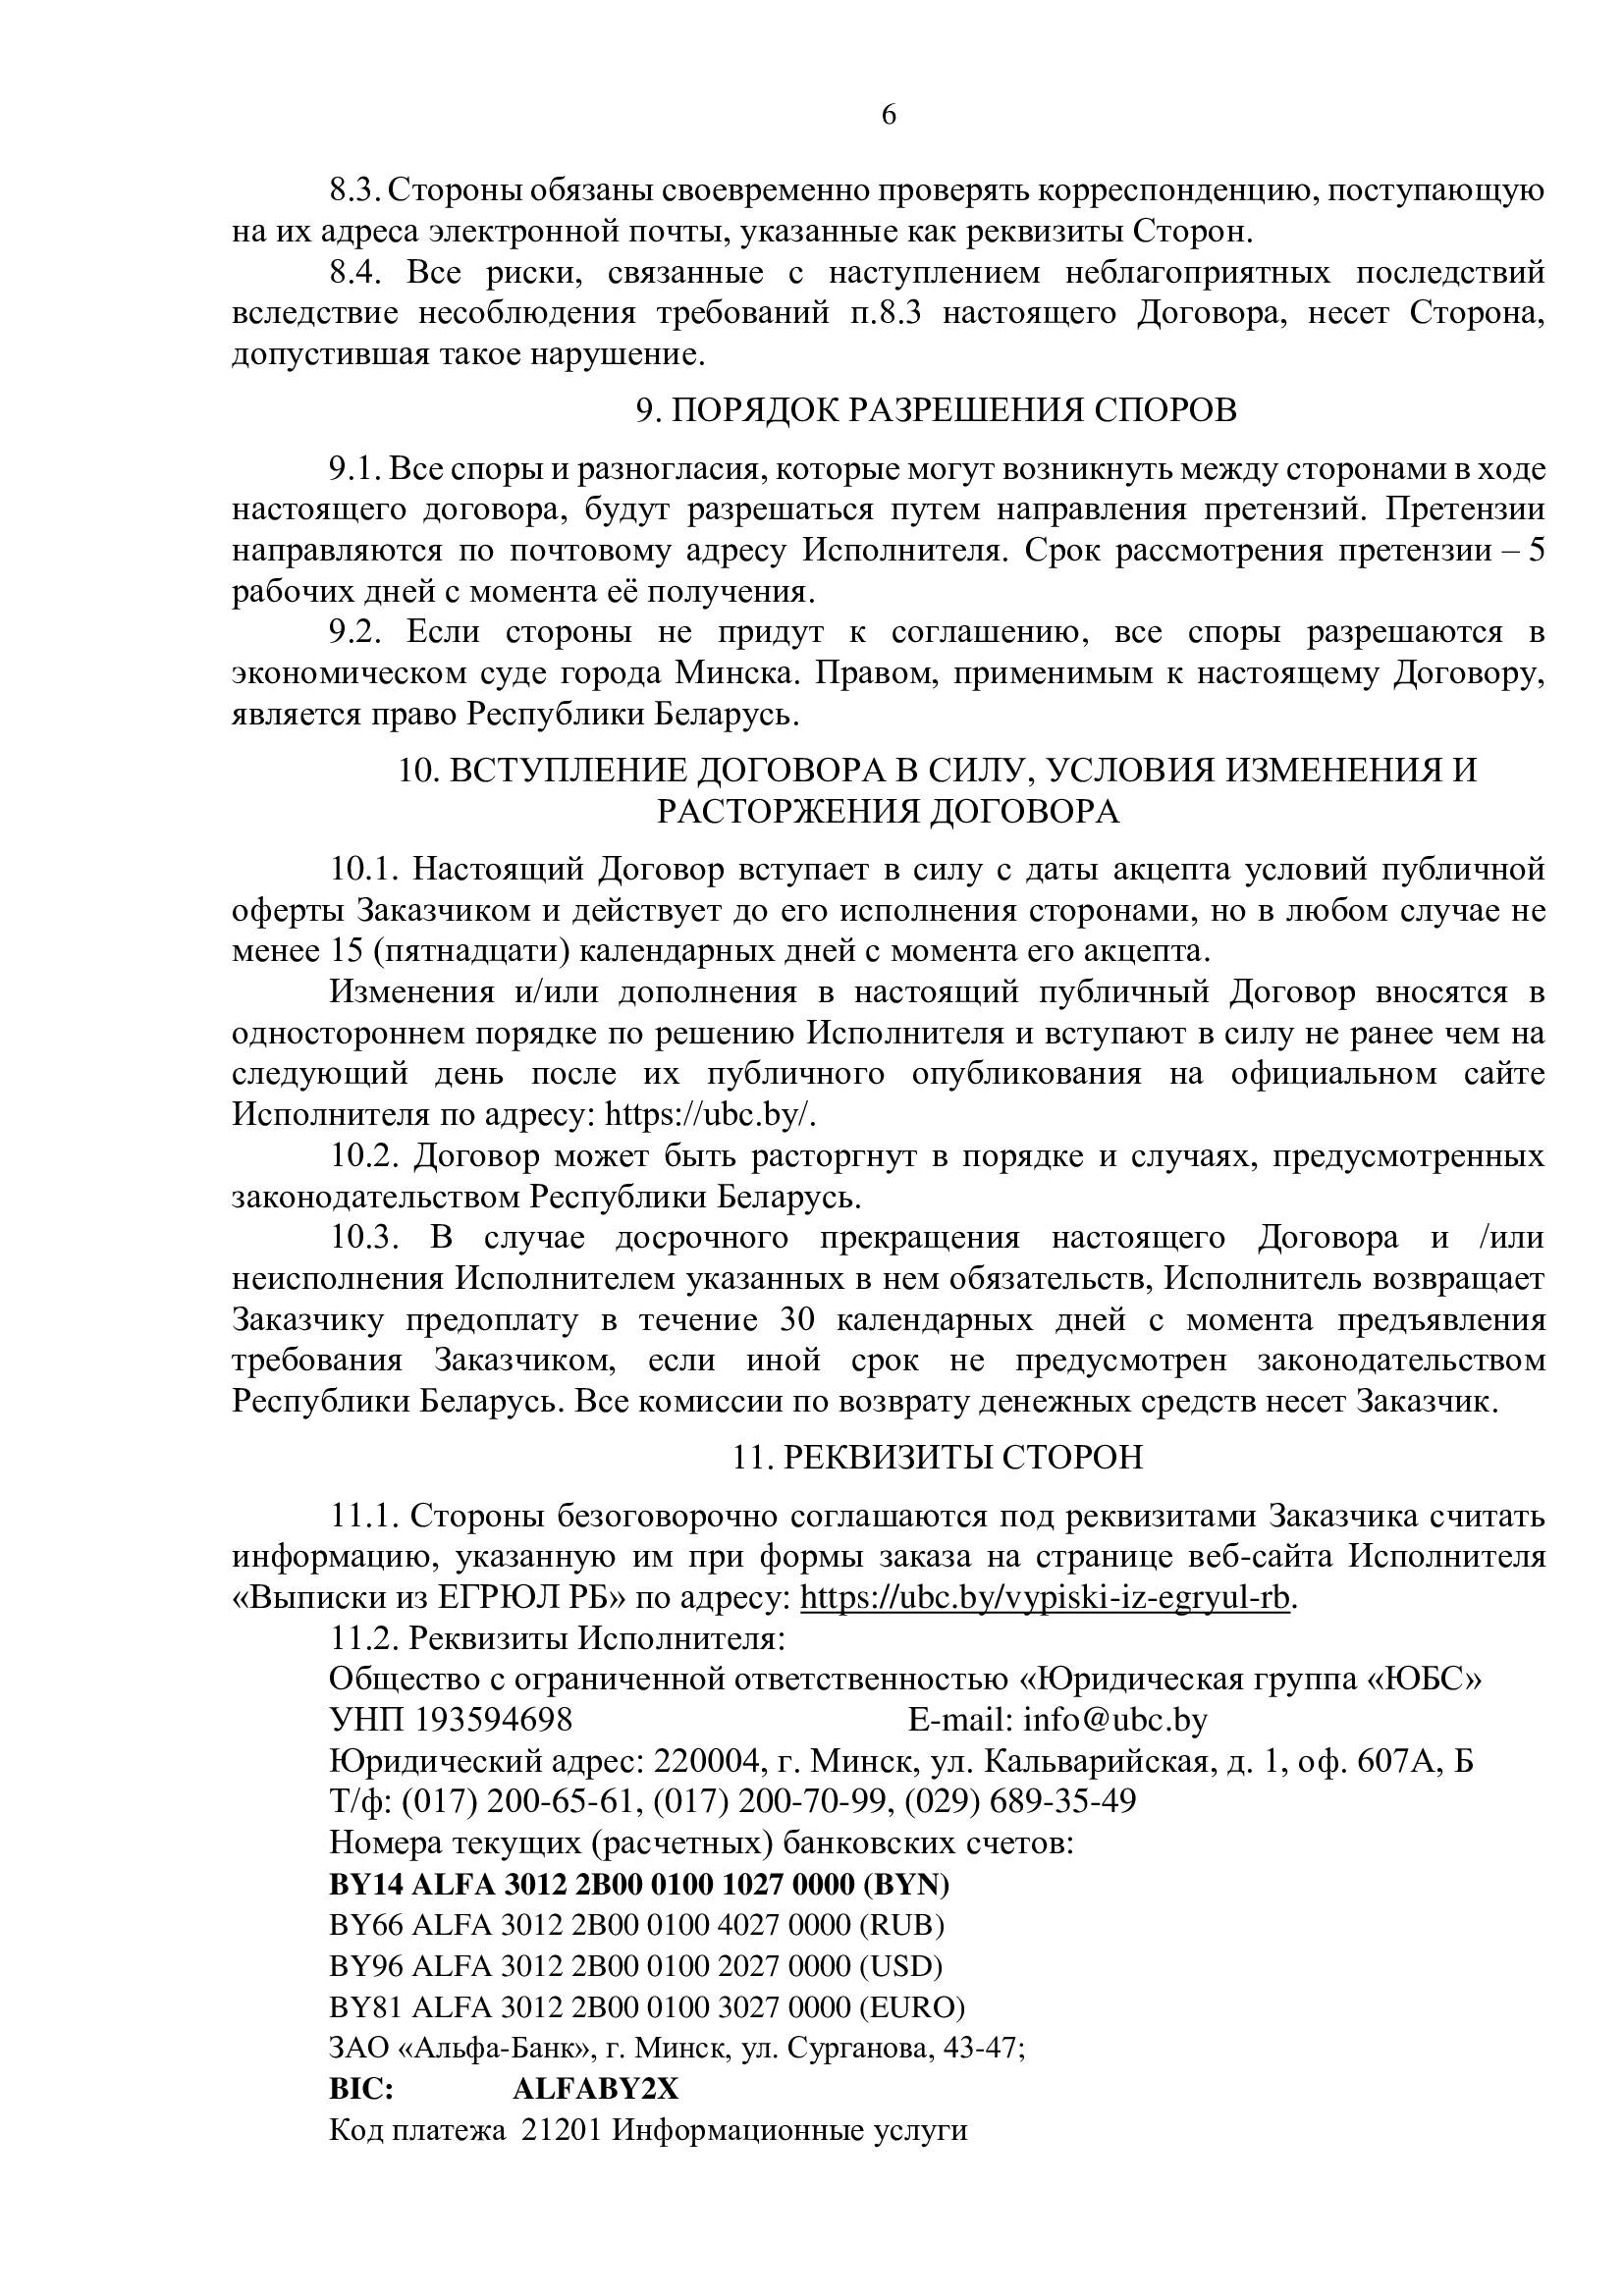 Публичный договор на заказ выписки из ЕГРЮЛ РБ 6